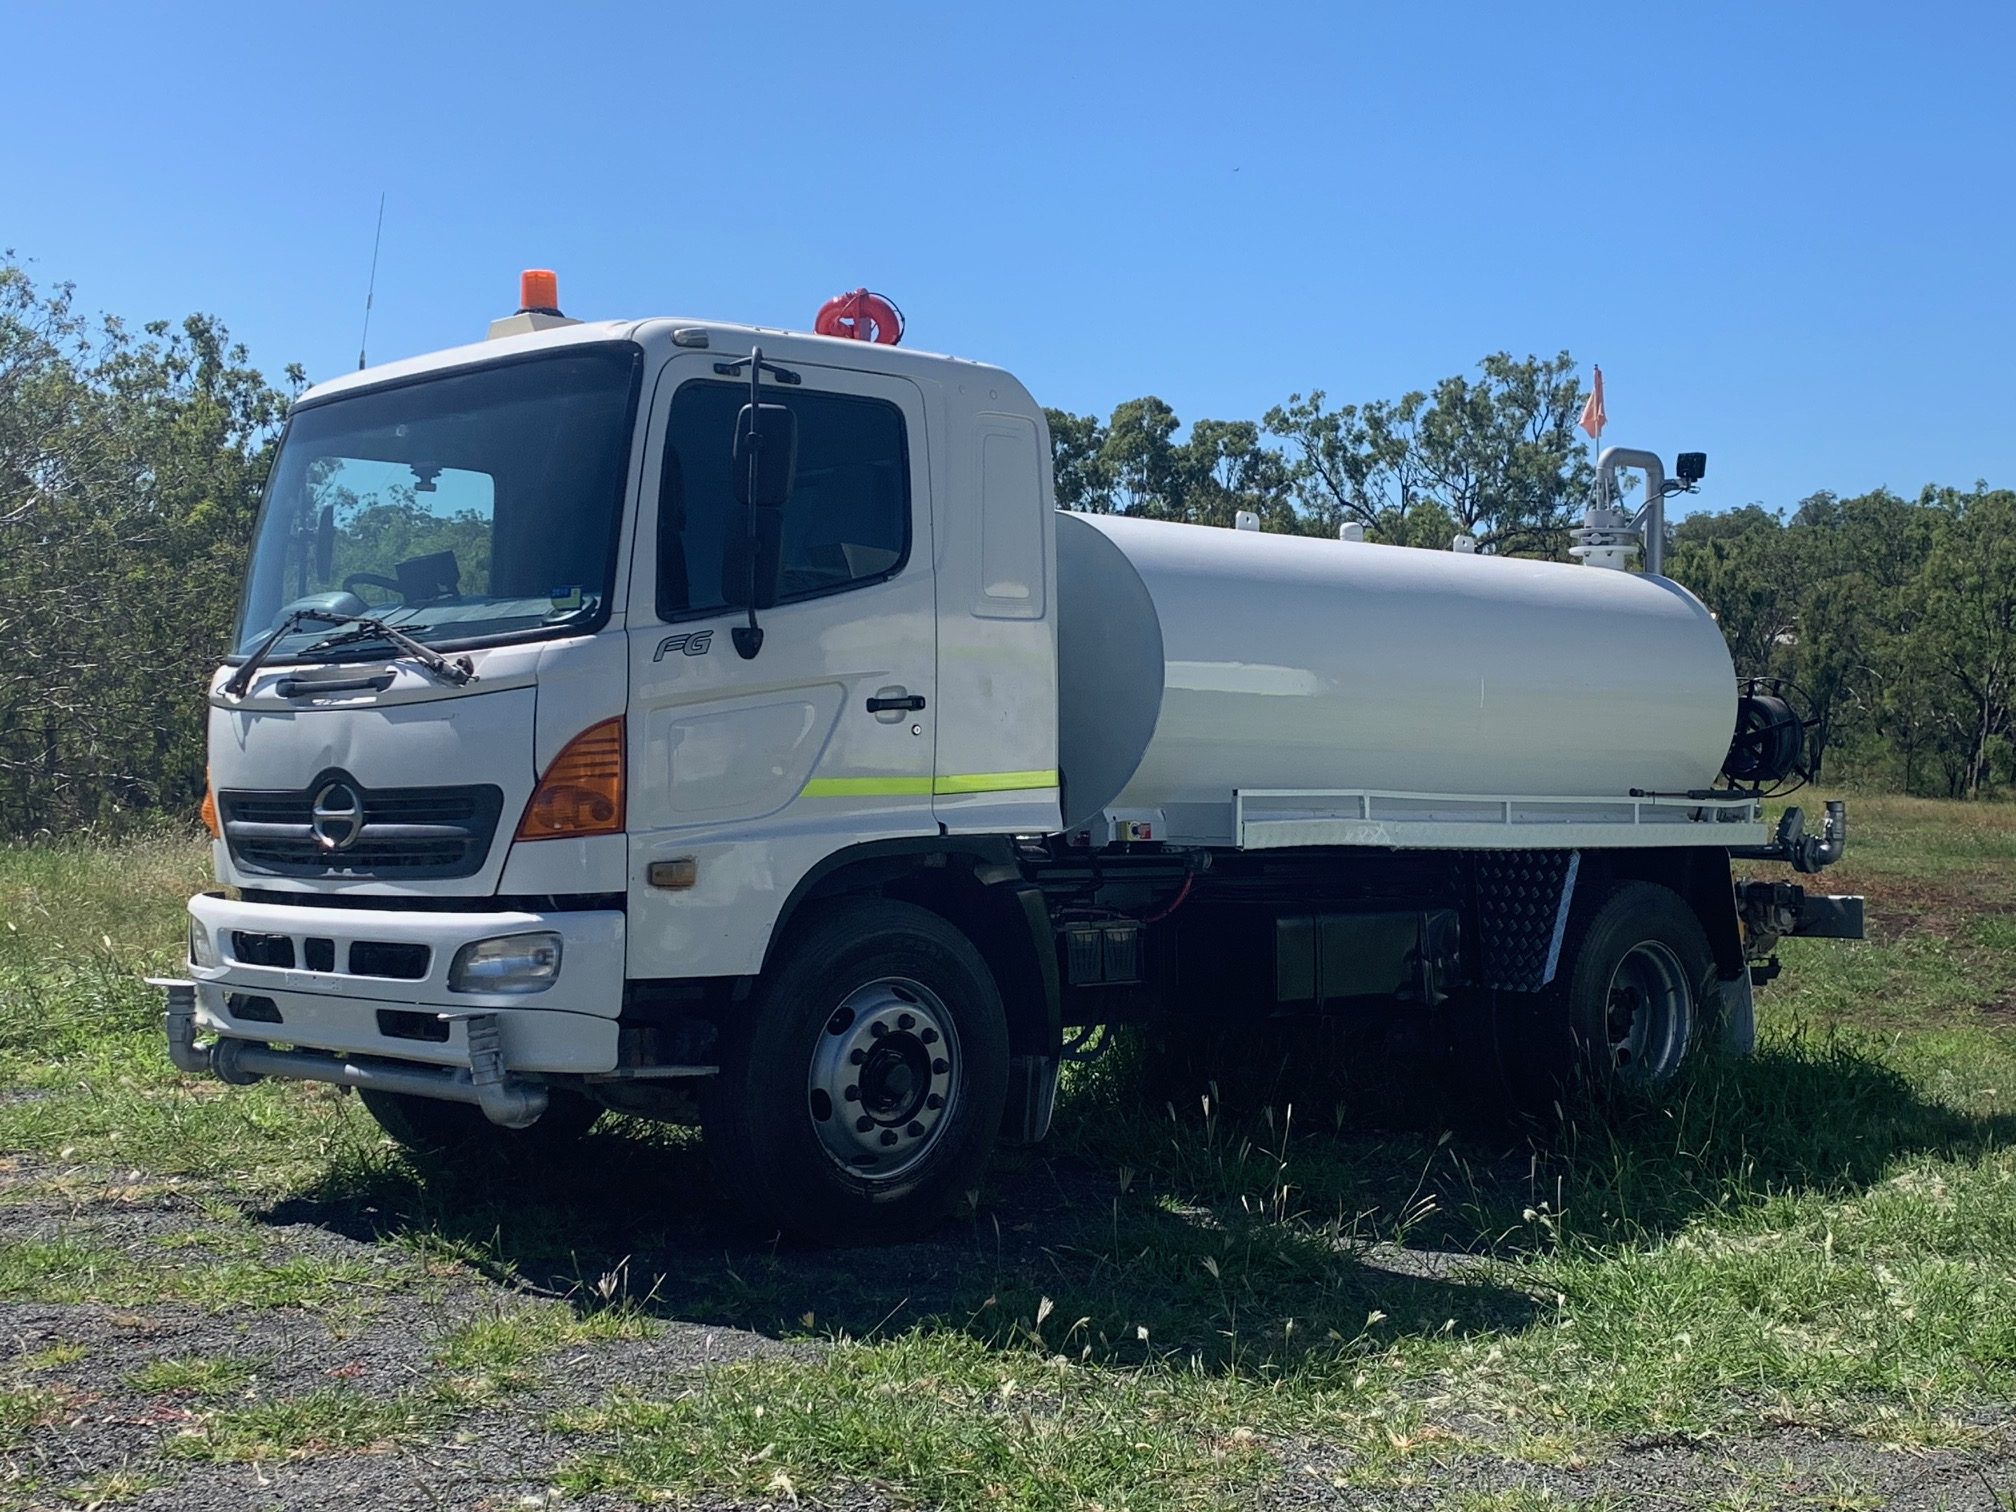  Hino  Water Truck  Excavation Equipment